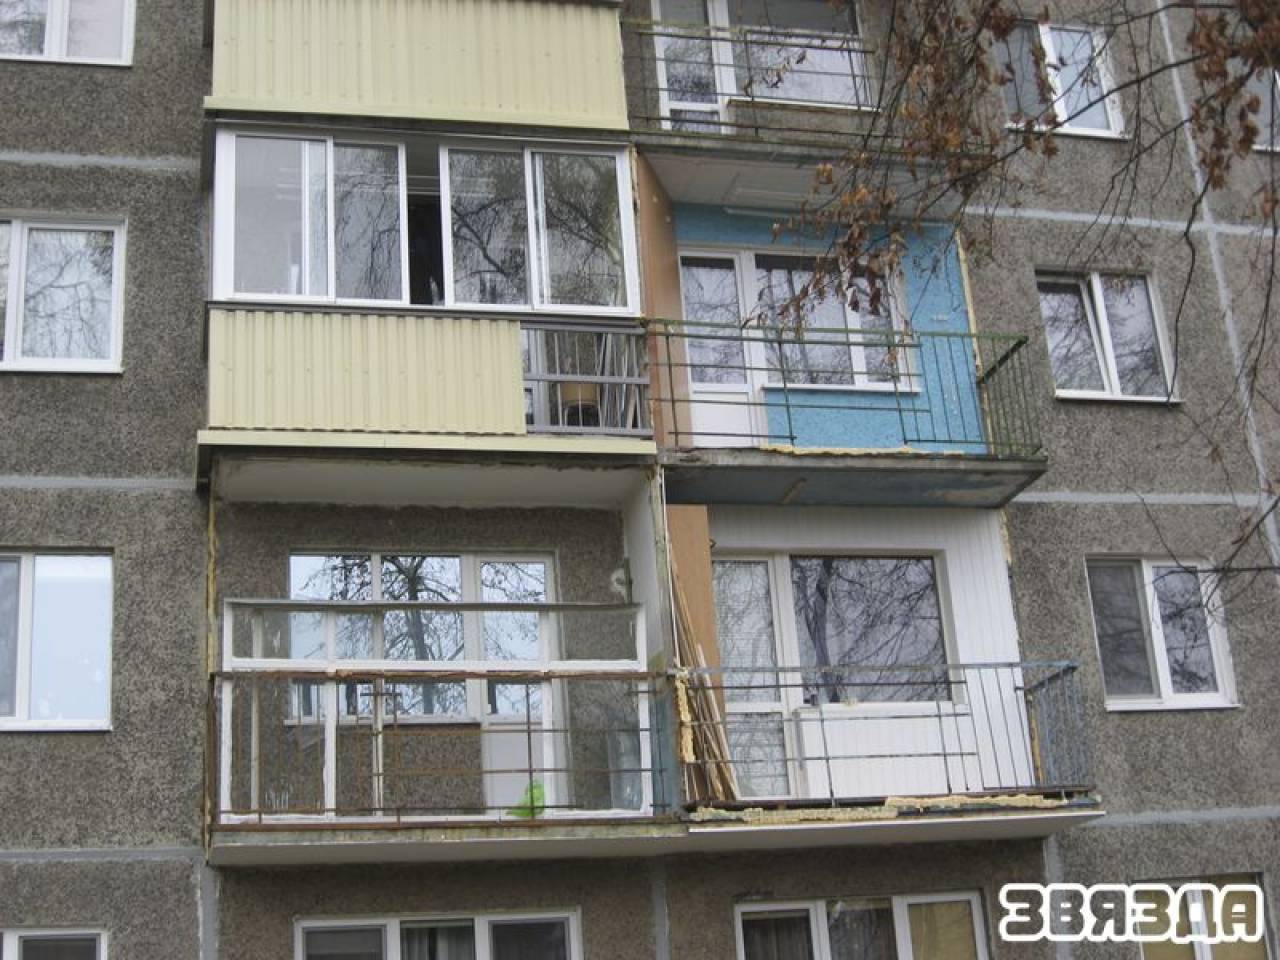 В Гродно жители квартир отказались снимать обшивку с балконов во время капитального ремонта. На них подали в суд